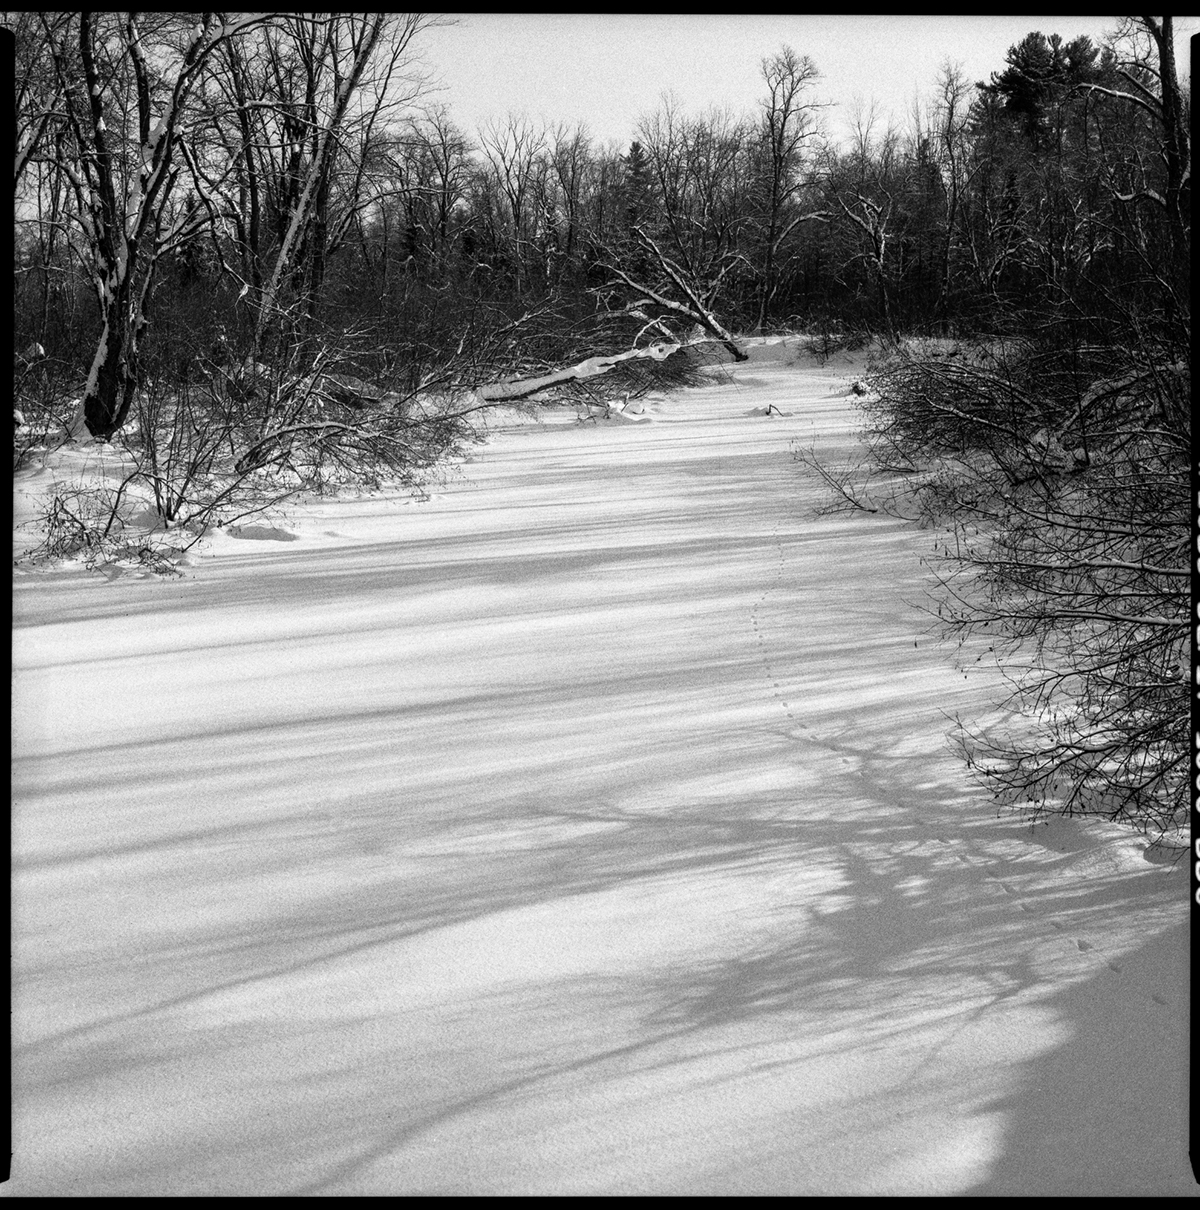 Quebec ILFORD rolleiflex ricohflex film 120 xp2 Delta 3200 Landscape paysage b&w analog winter Sony A7R